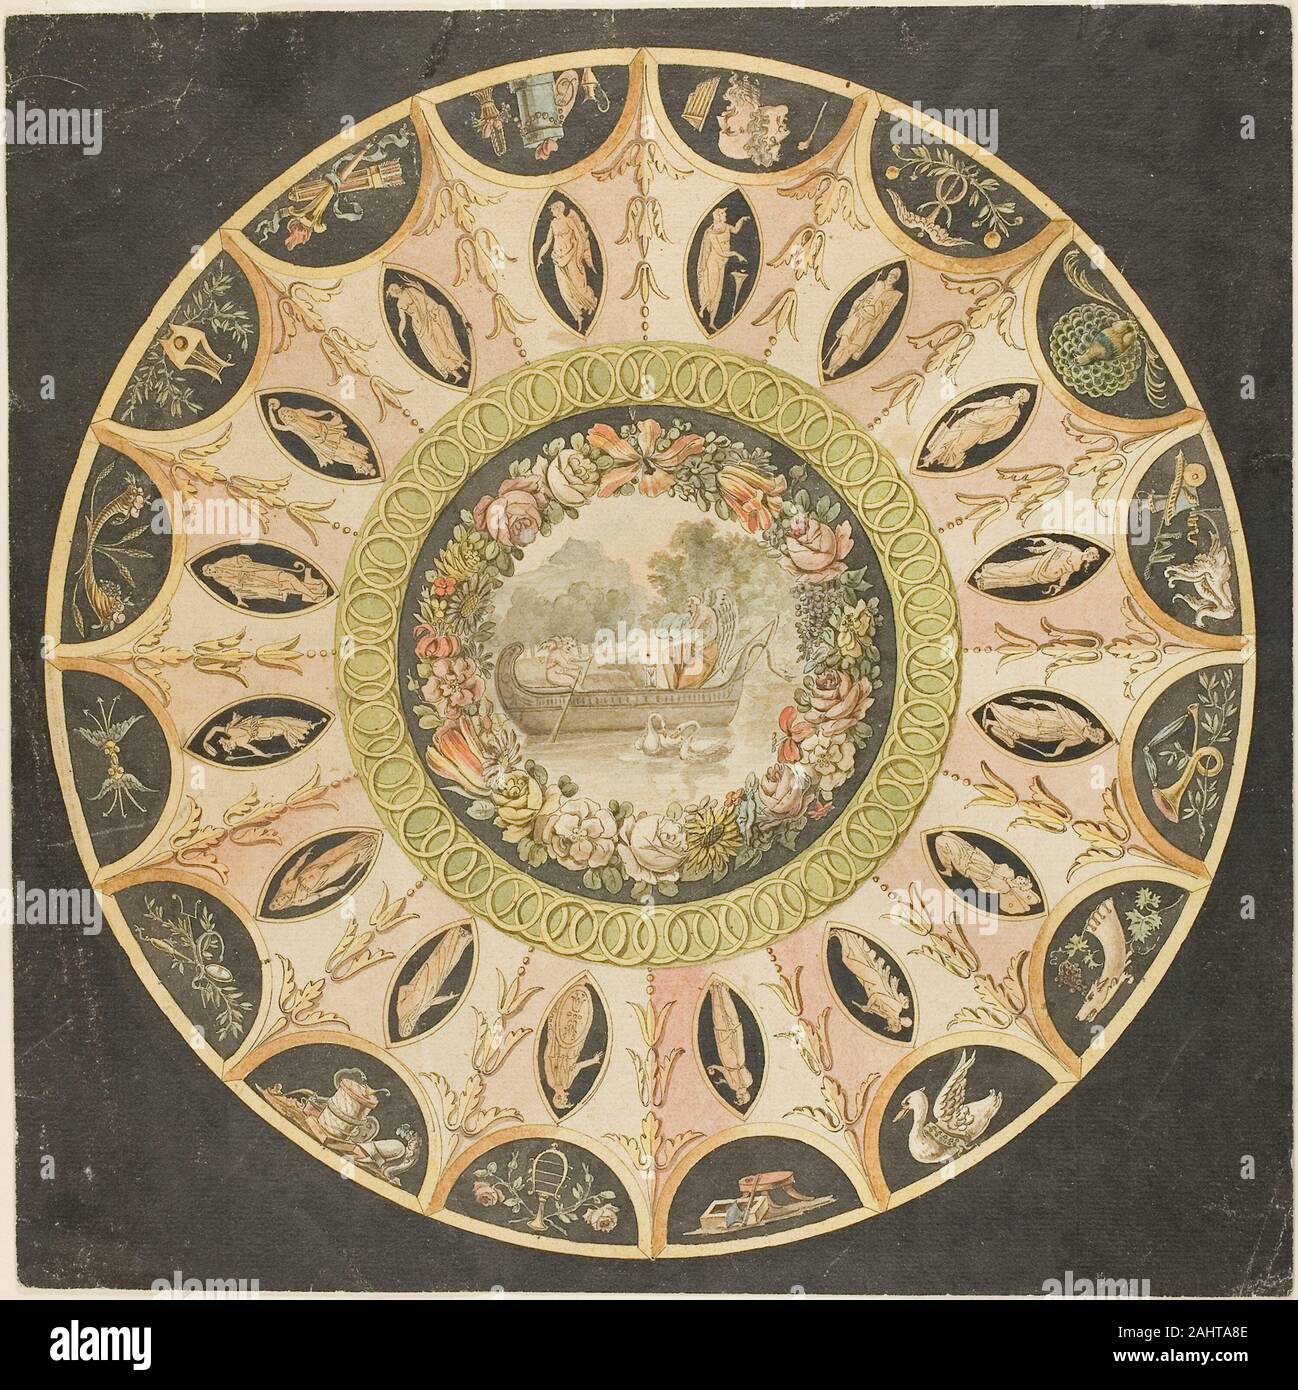 Florentin inconnu. Conception pour une décoration de plafond circulaire. 1750-1899. L'Italie. Aquarelle, plume et encre noire avec, plus de graphite, sur papier vergé crème Banque D'Images